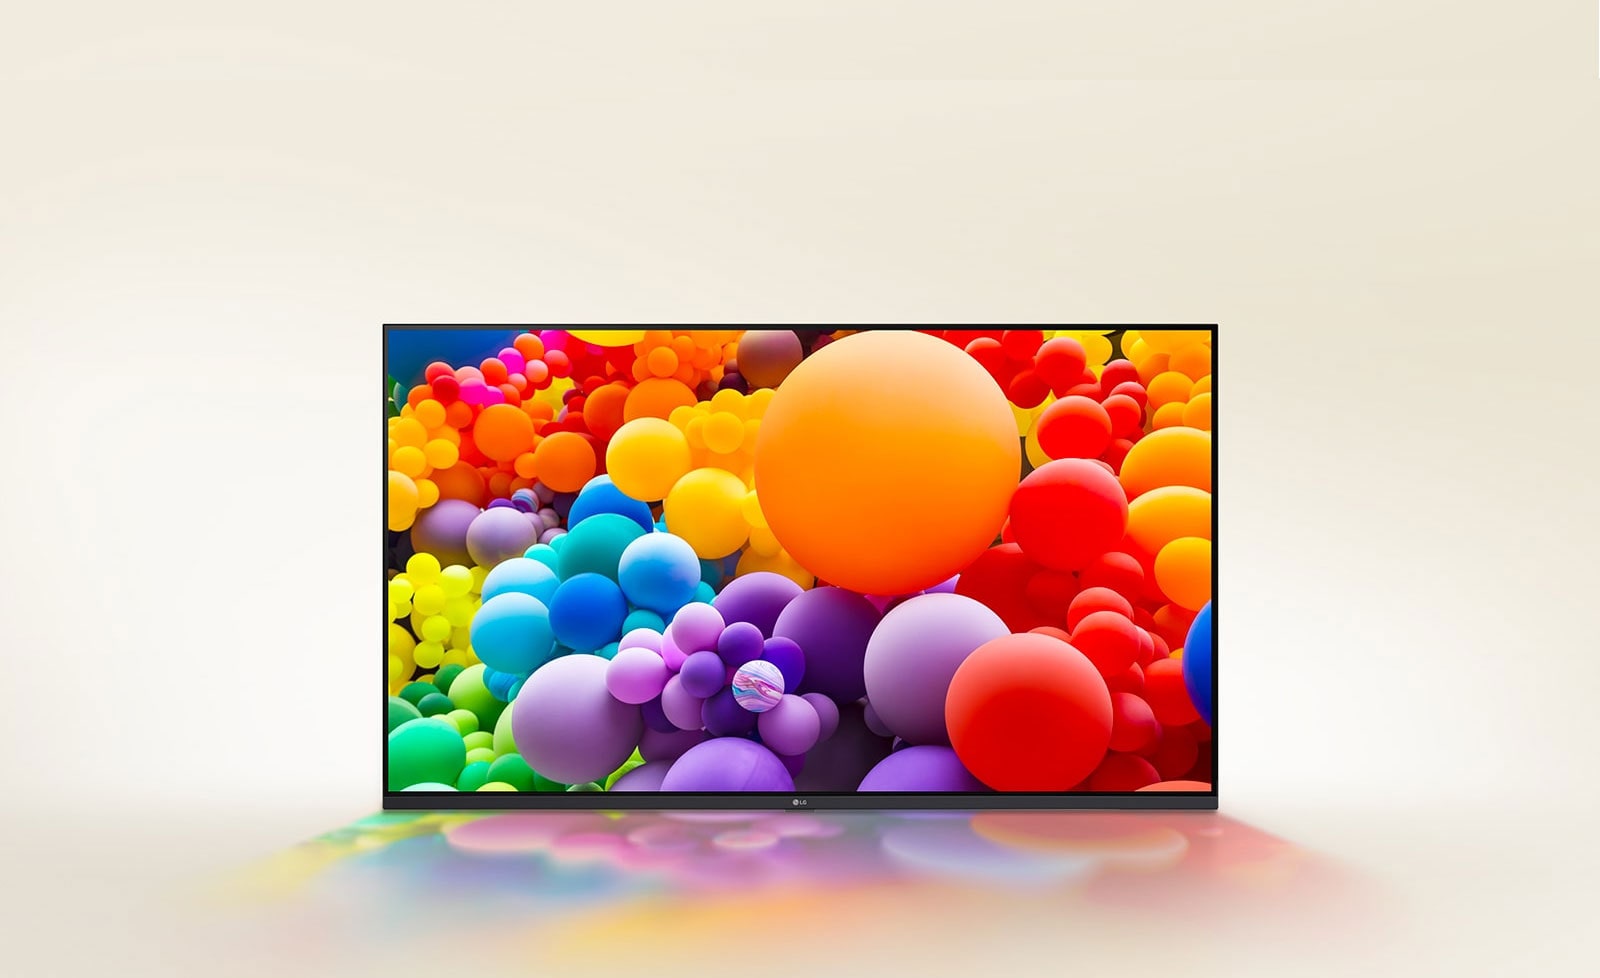 Auf dem LG UHD-Fernseher werden viele Ballons mit unterschiedlichen Farben angezeigt.